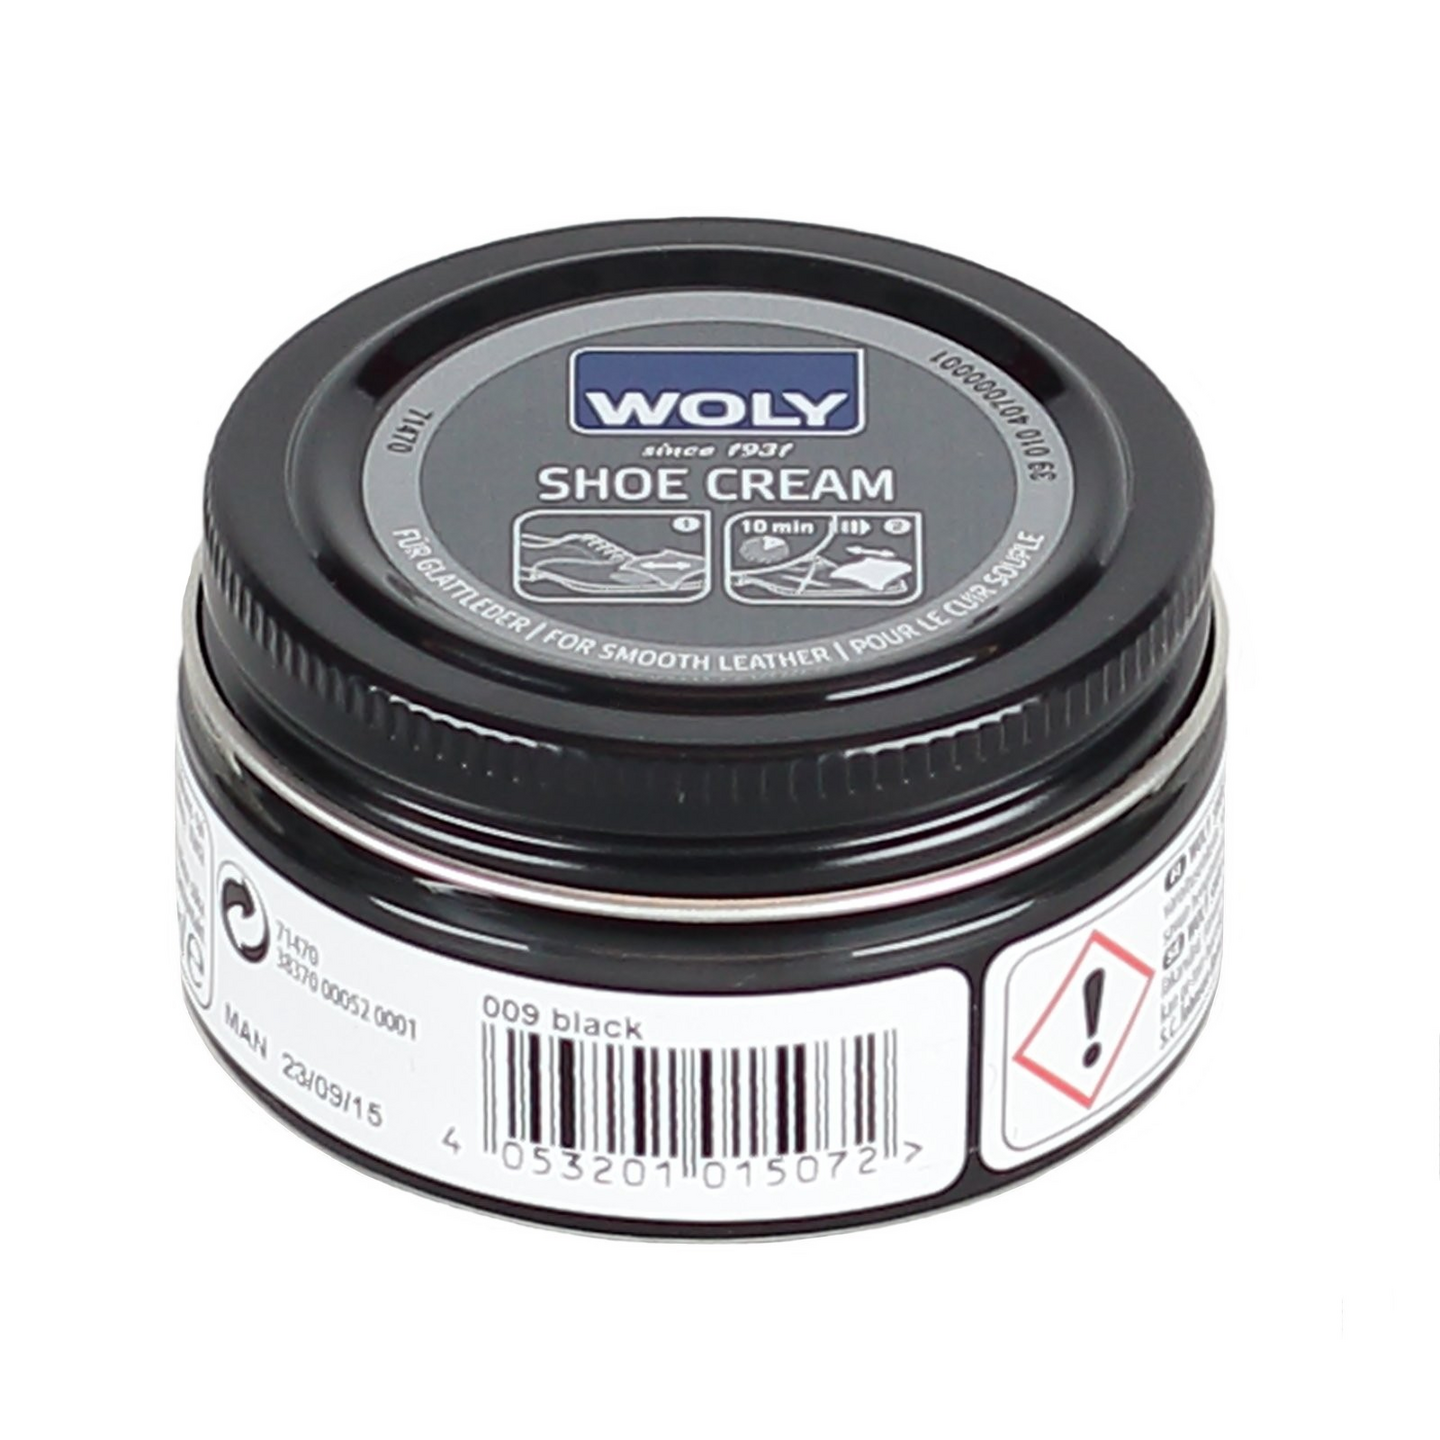 Woly Shoe Cream, musta, 50ml